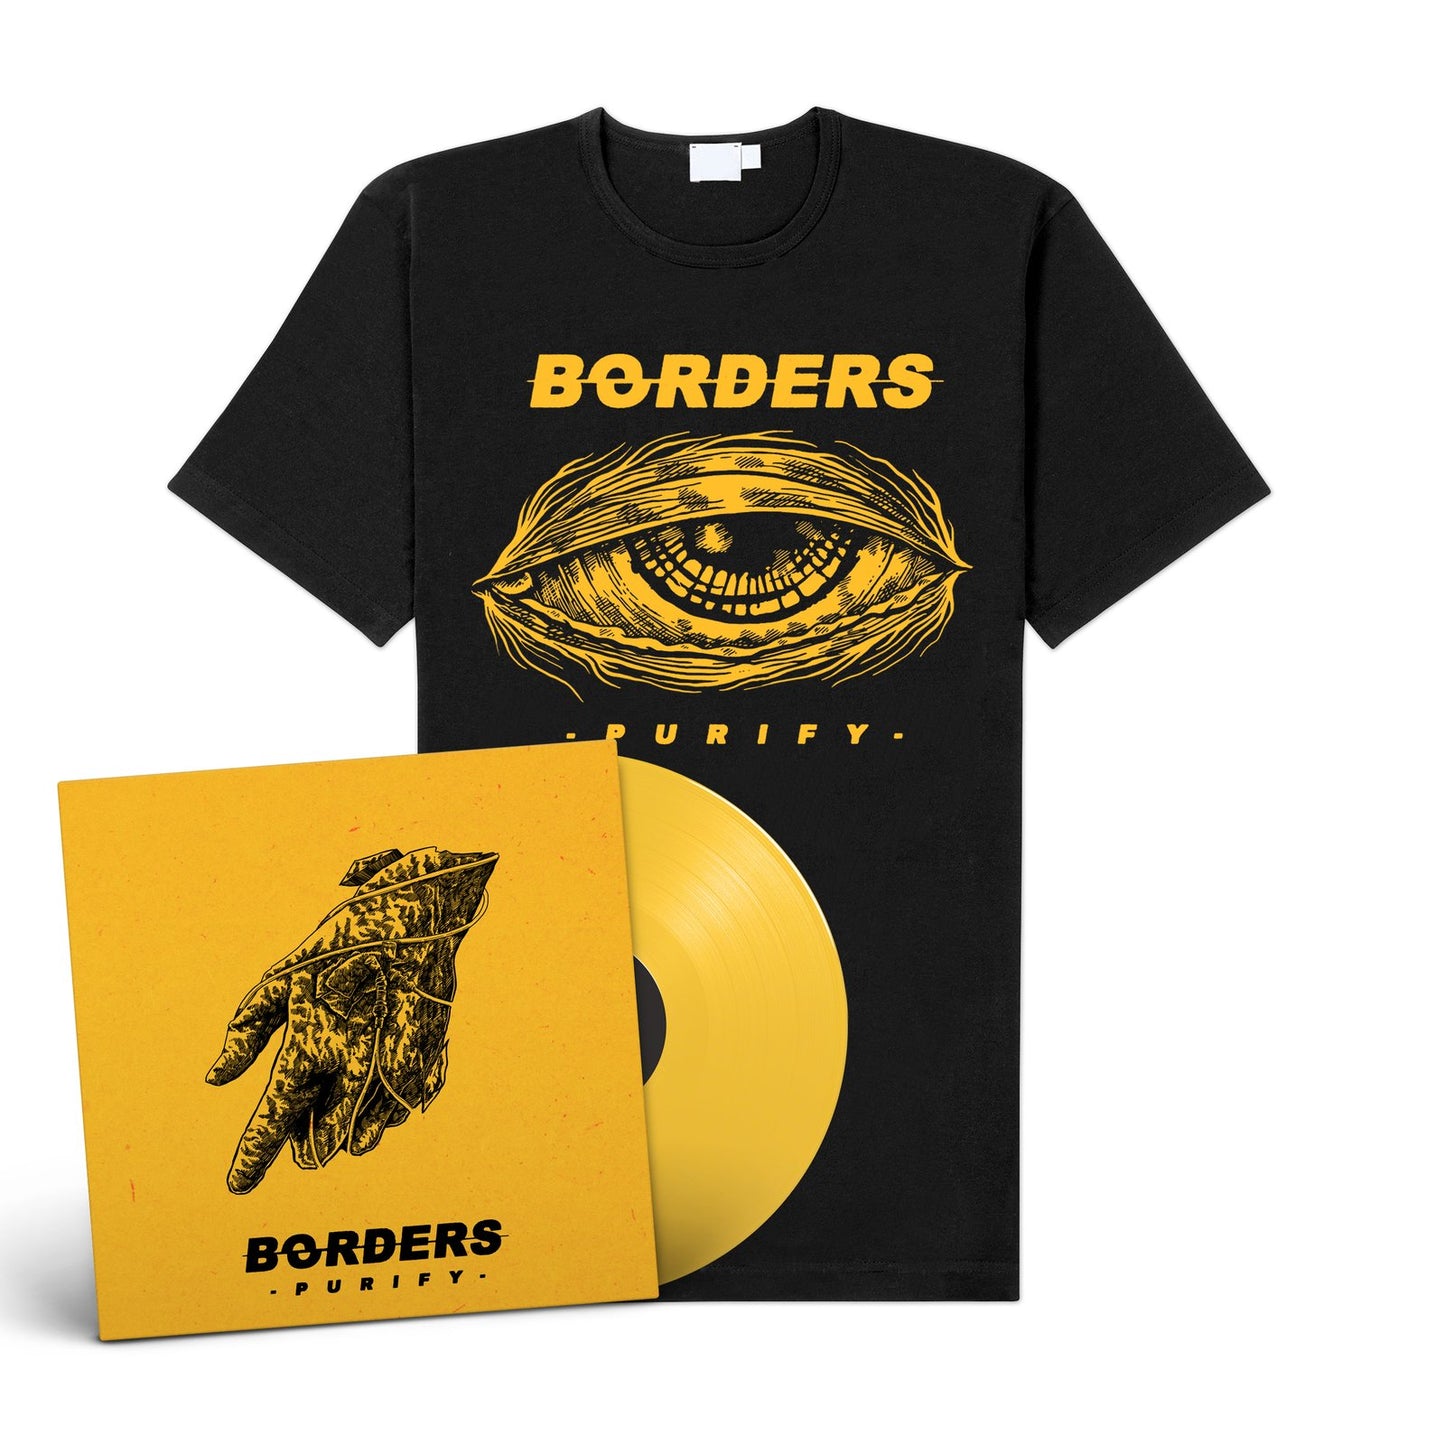 Borders "Purify" LP-Bundle "Purif-Eye"